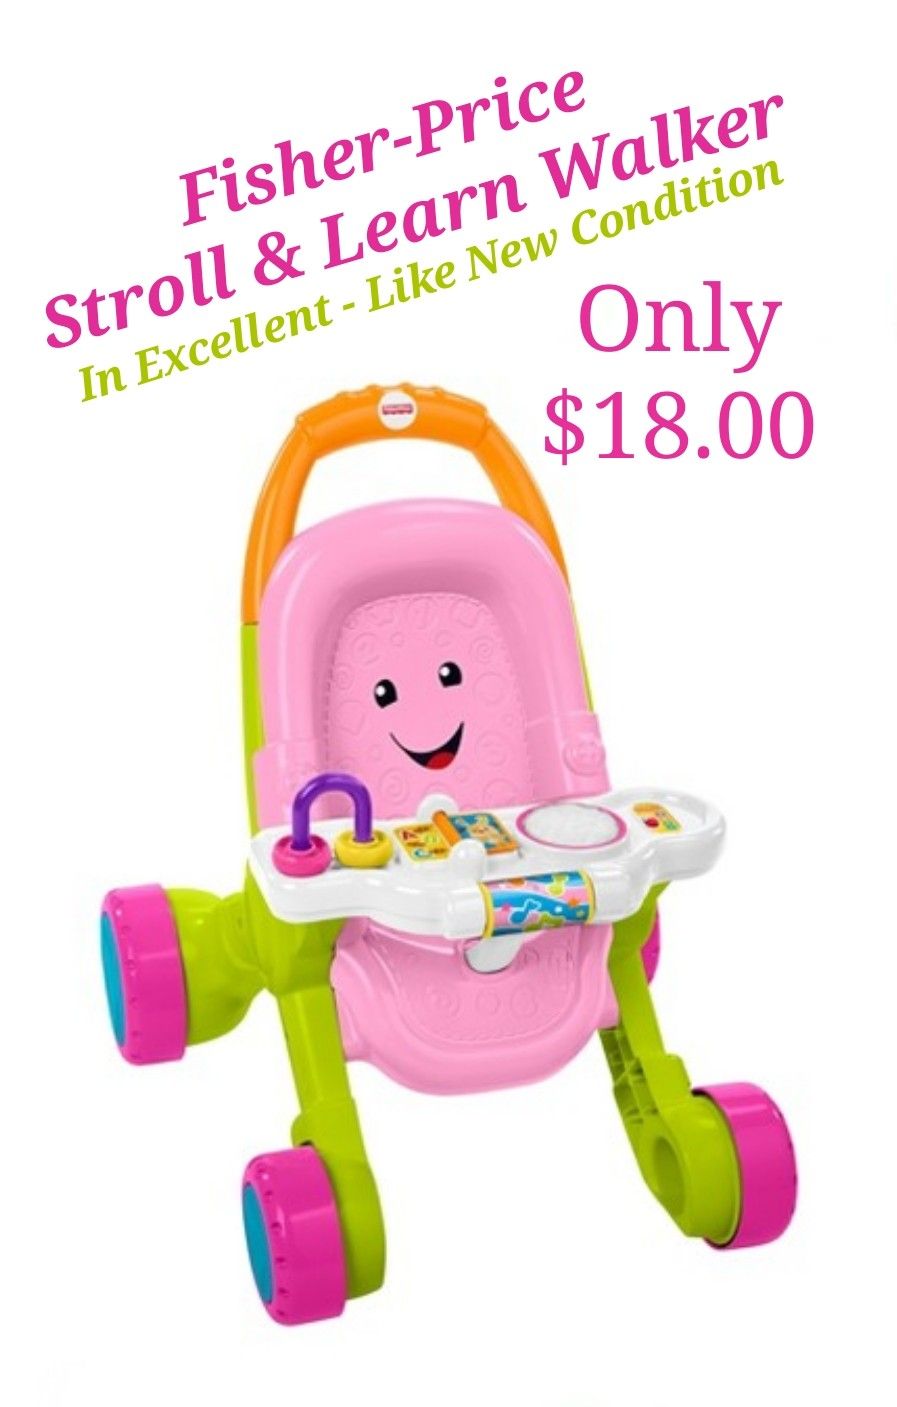 Fisher-Price Stroll & Learn Walker - Adorable Baby Doll Stroller & Walker